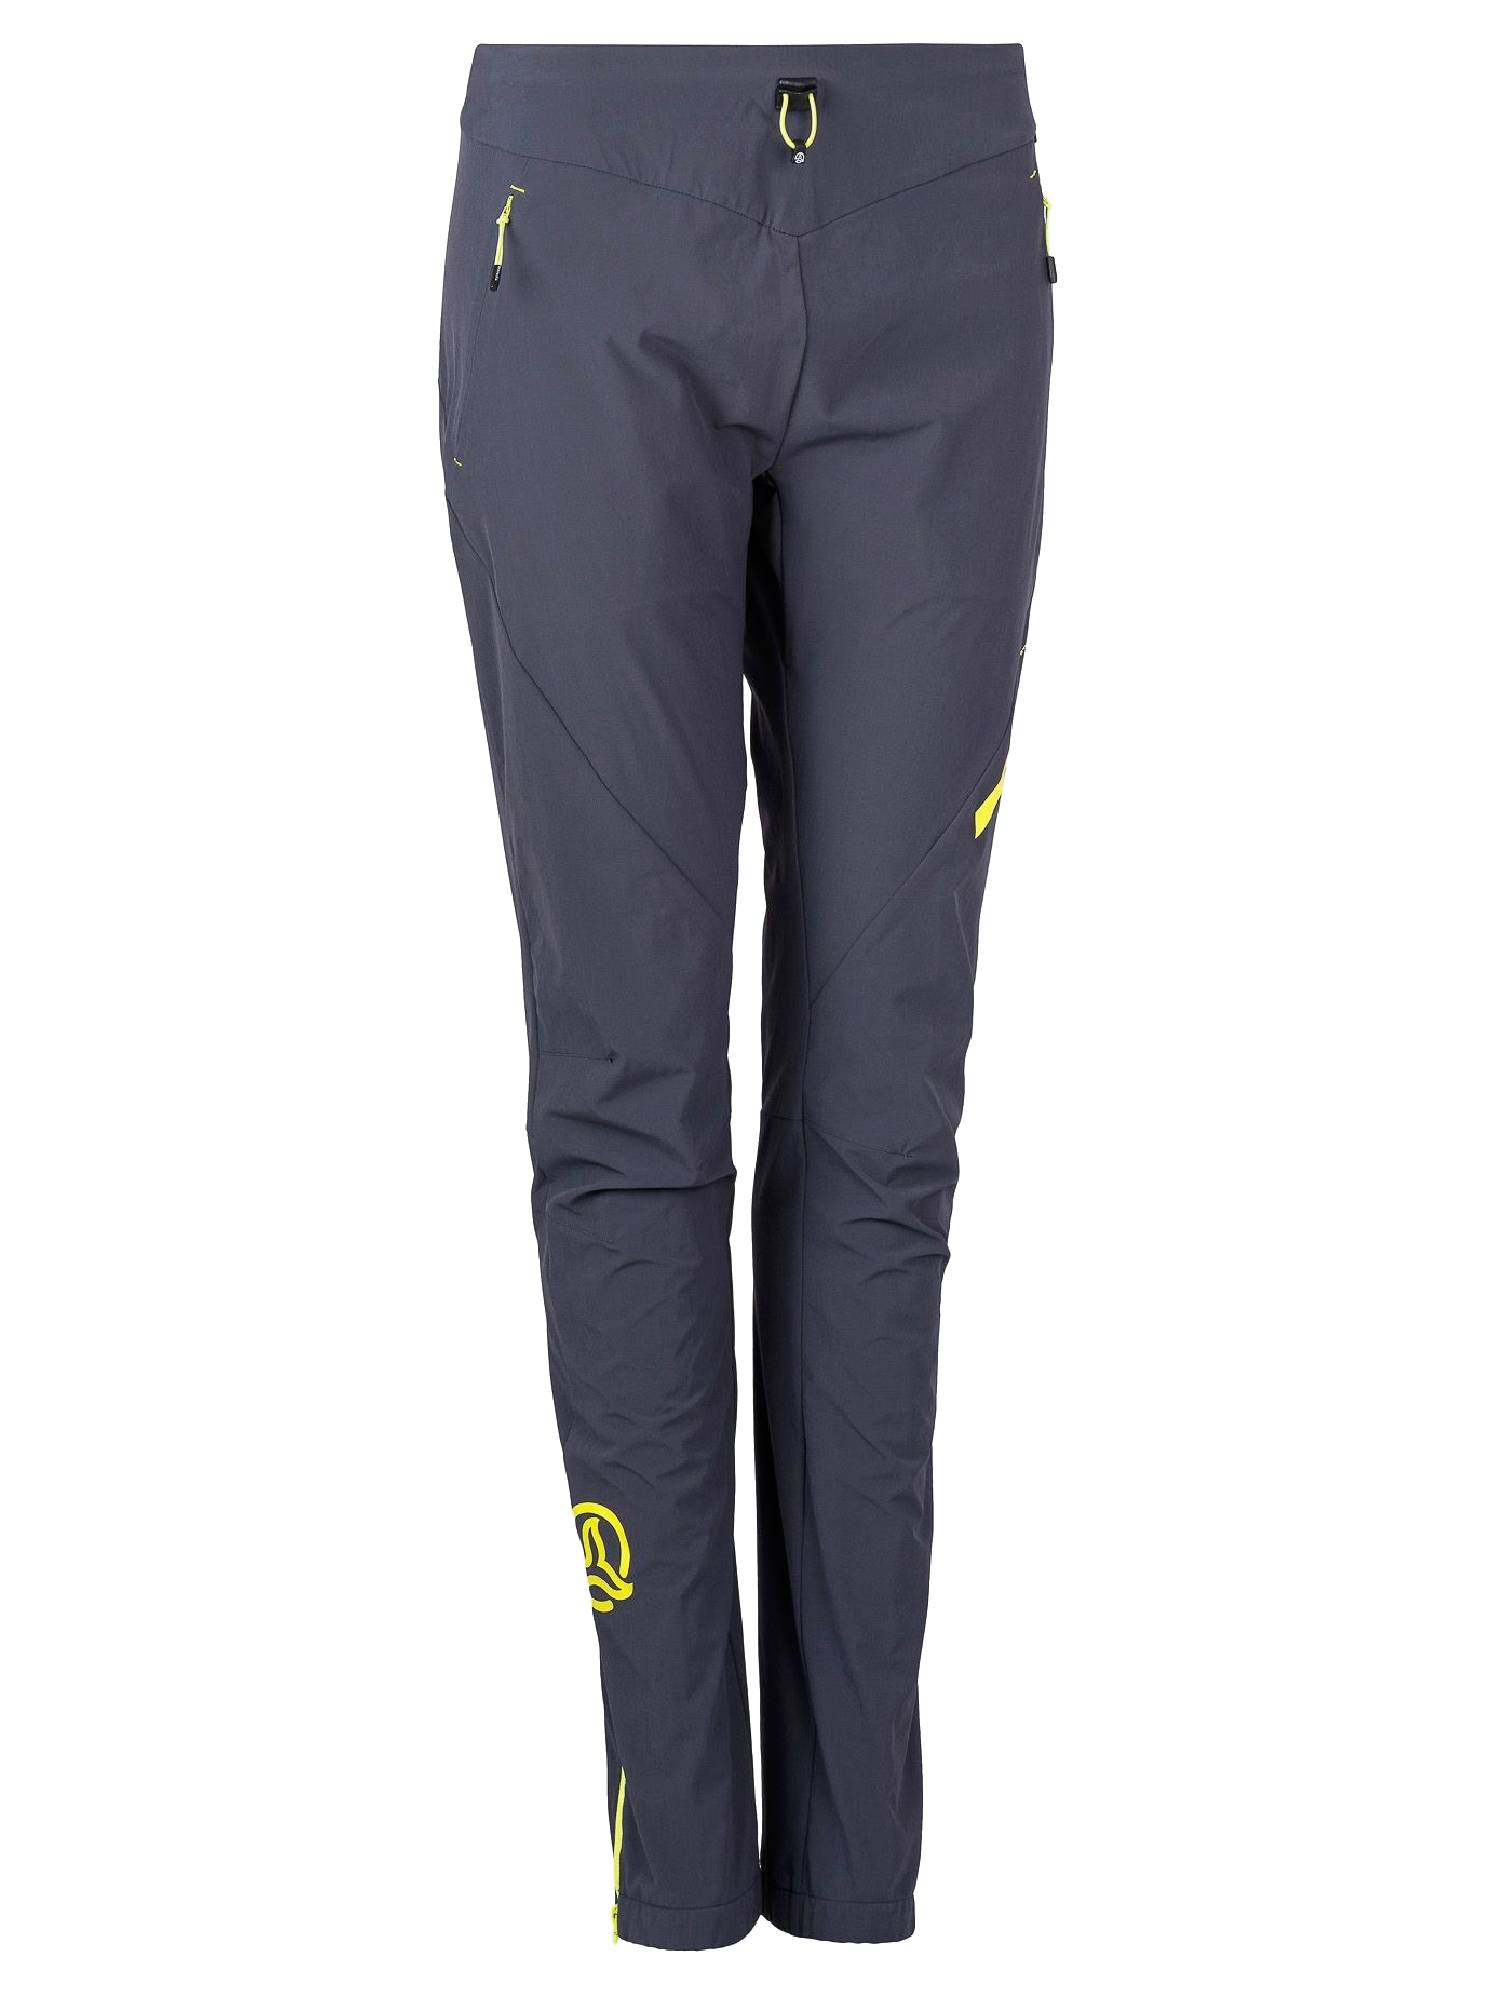 Спортивные брюки женские Ternua Outrun Pt W серые M